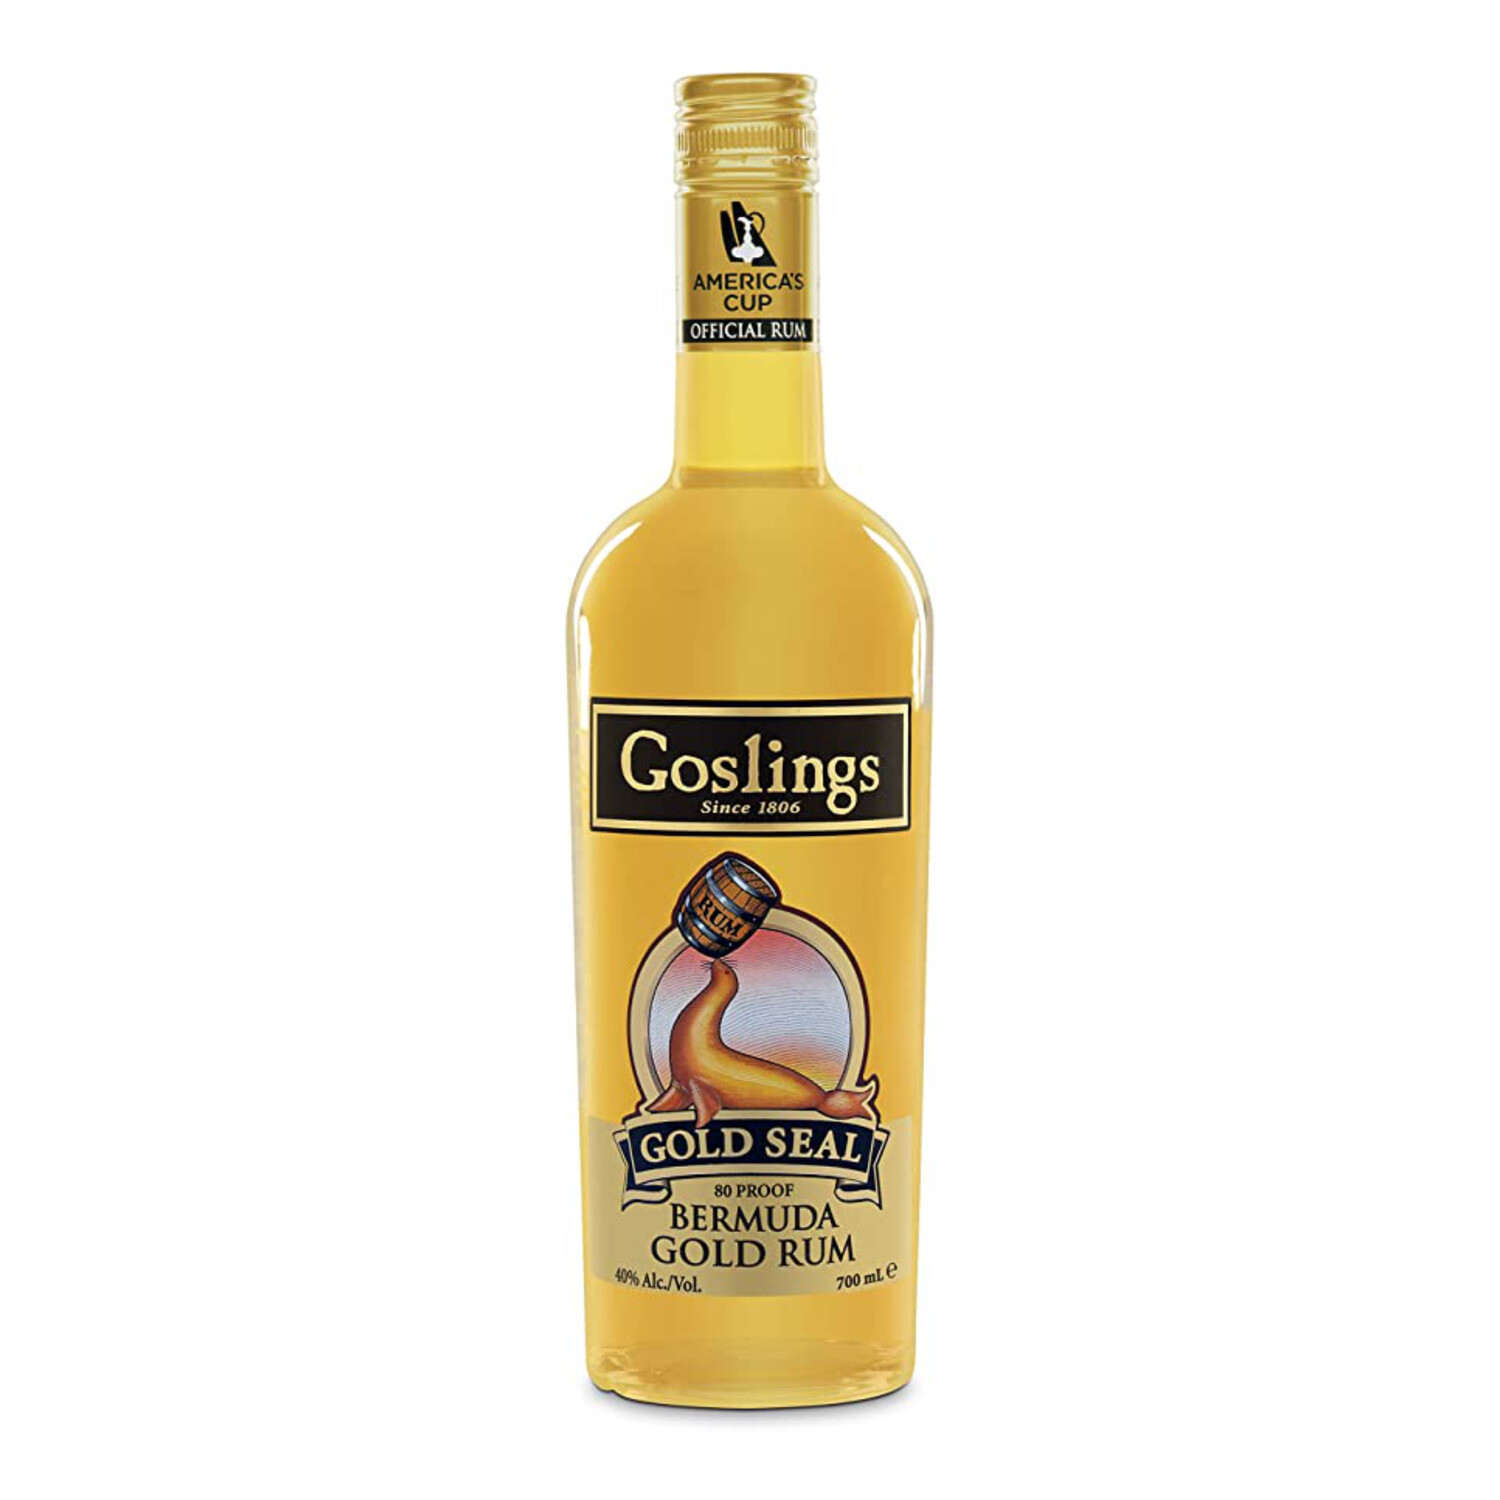 Gosling's Gold Seal Bermuda Rum